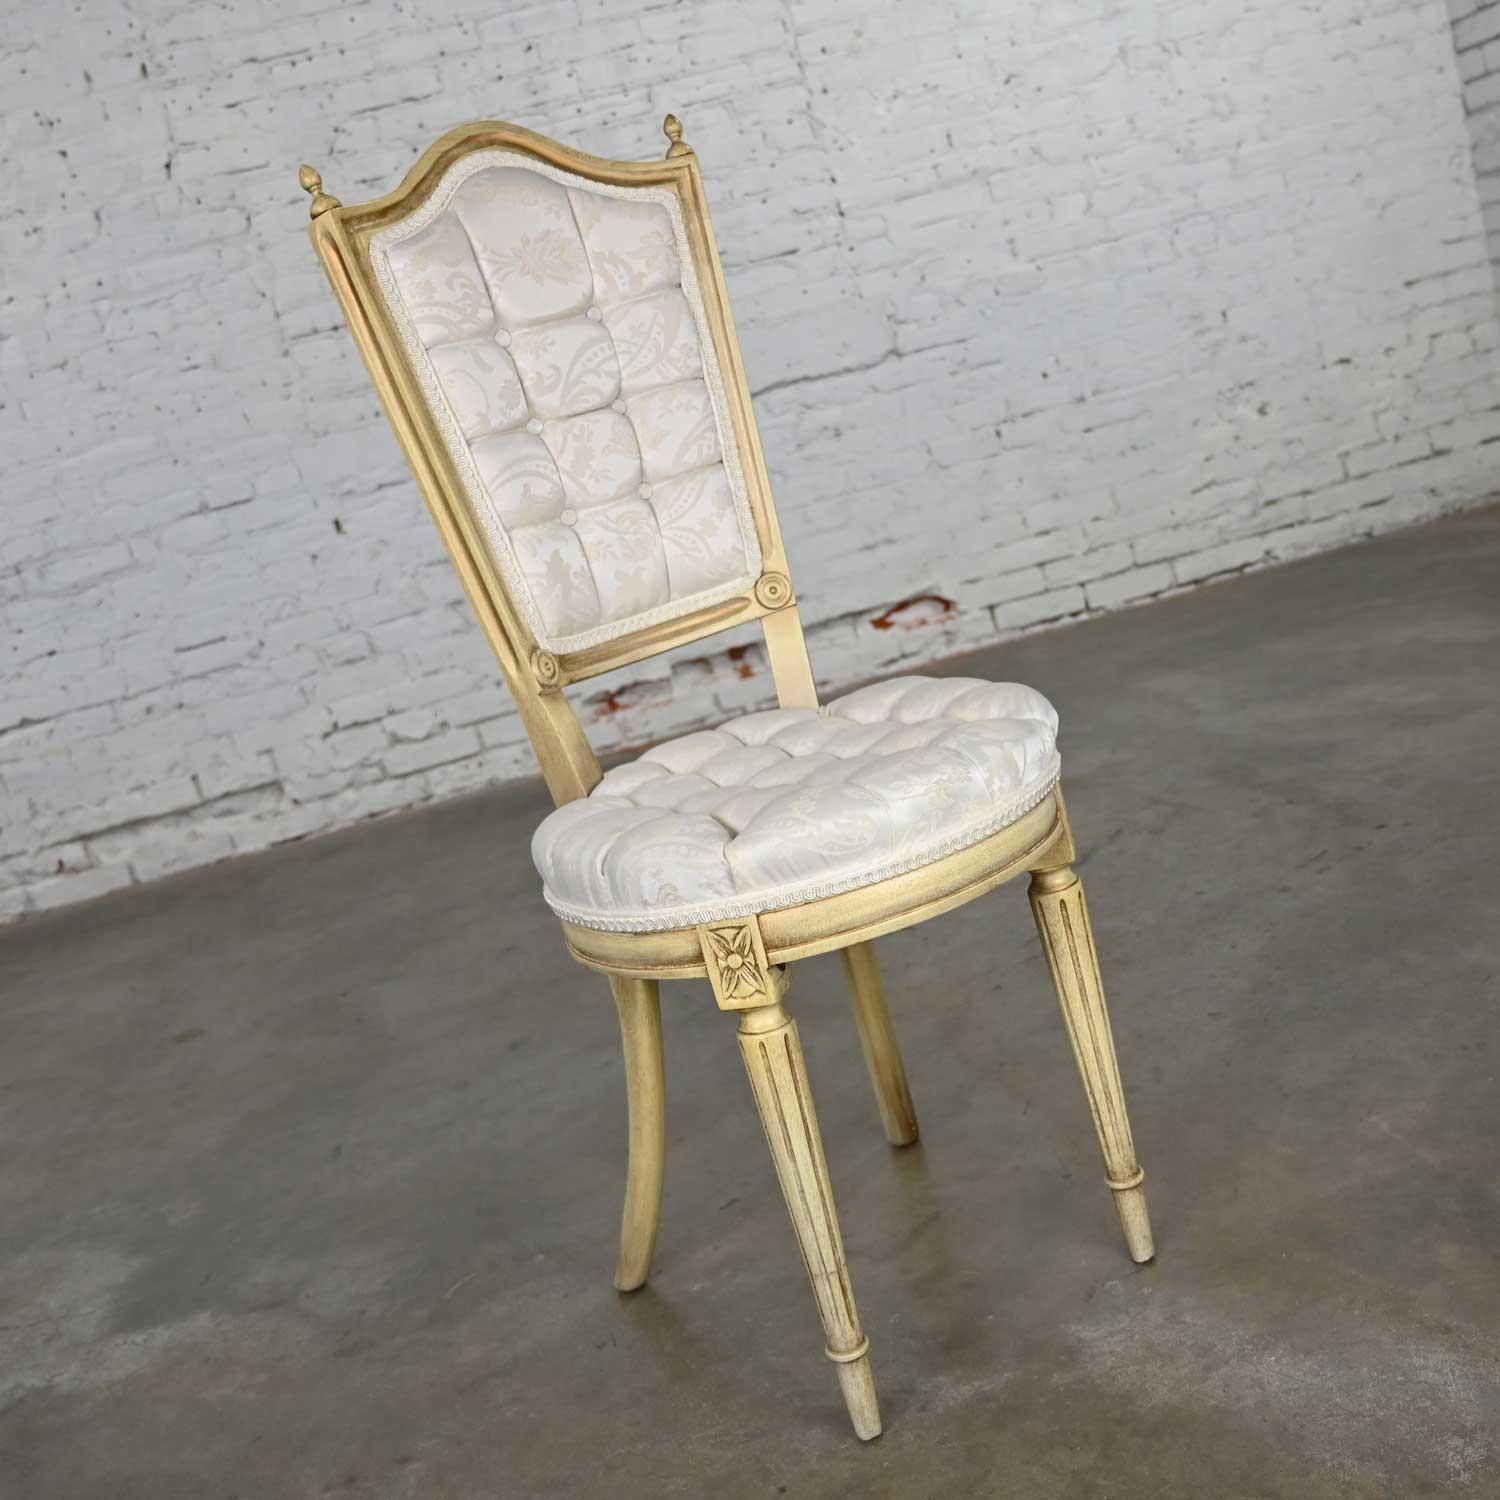 Schöne Französisch Provincial, Hollywood Regency, Louis XVI-Stil antike weiße Dressing oder Akzent Stuhl zugeschrieben Prince Howard Furniture. Es trägt seinen ursprünglichen weißen Brokatstoff. Wunderbarer Zustand, wenn man bedenkt, dass es sich um